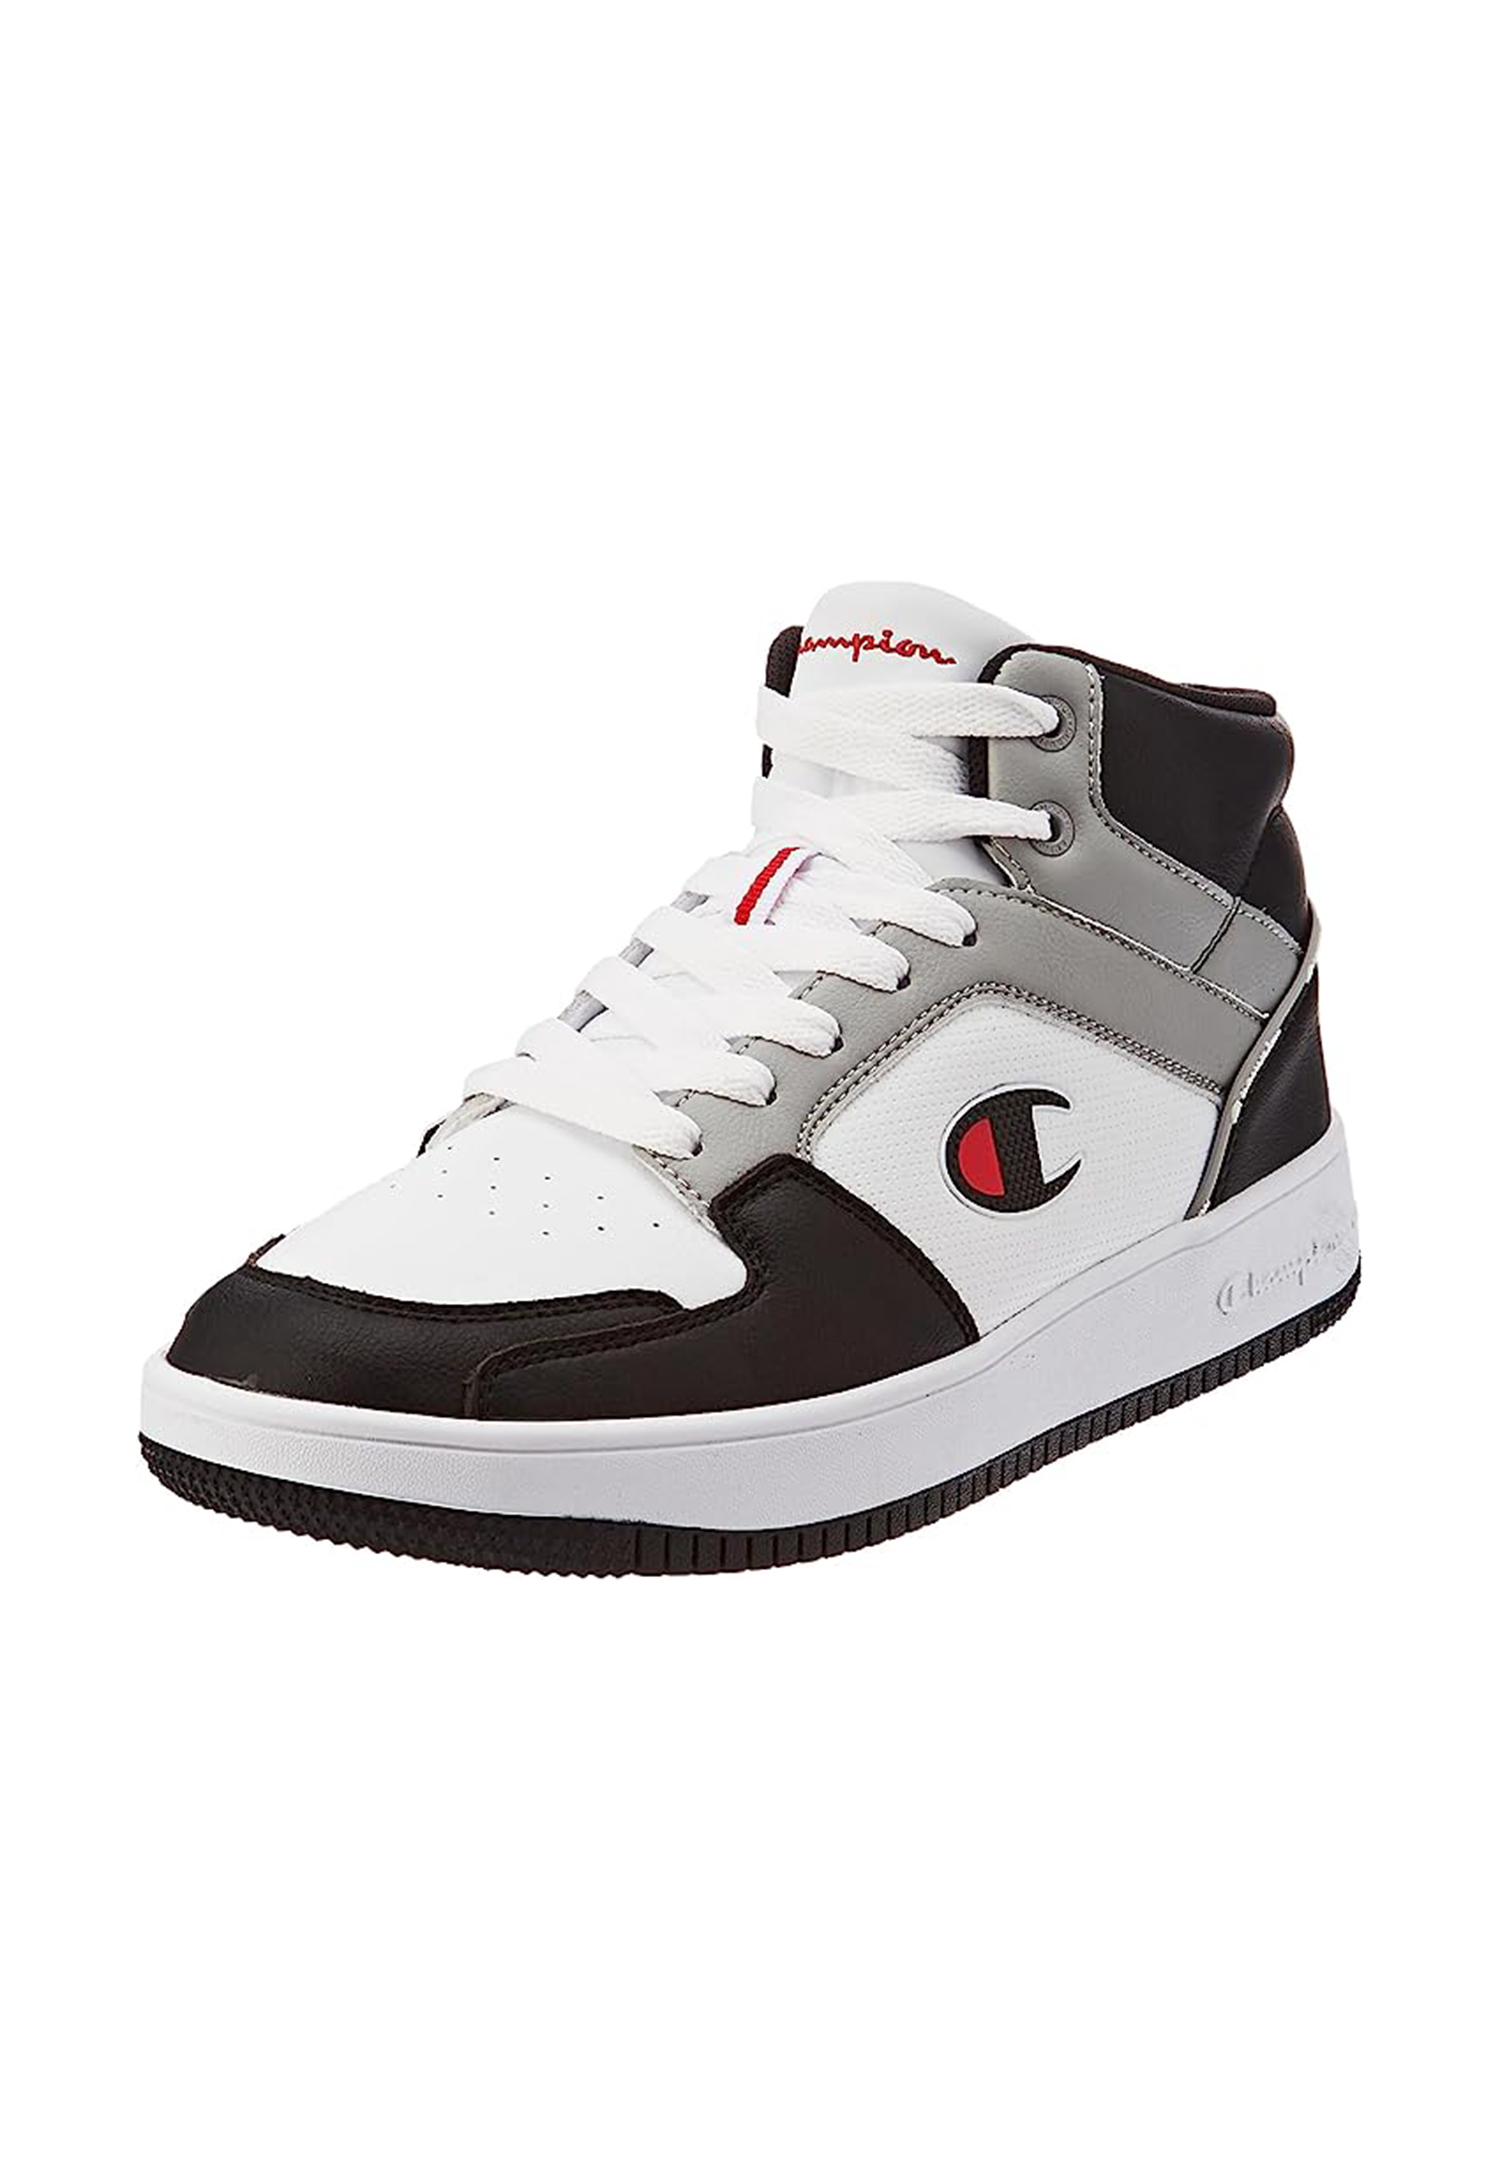 Champion REBOUND 2.0 MID Herren Sneaker S21907-CHA-WW014 weiß/schwarz/grau